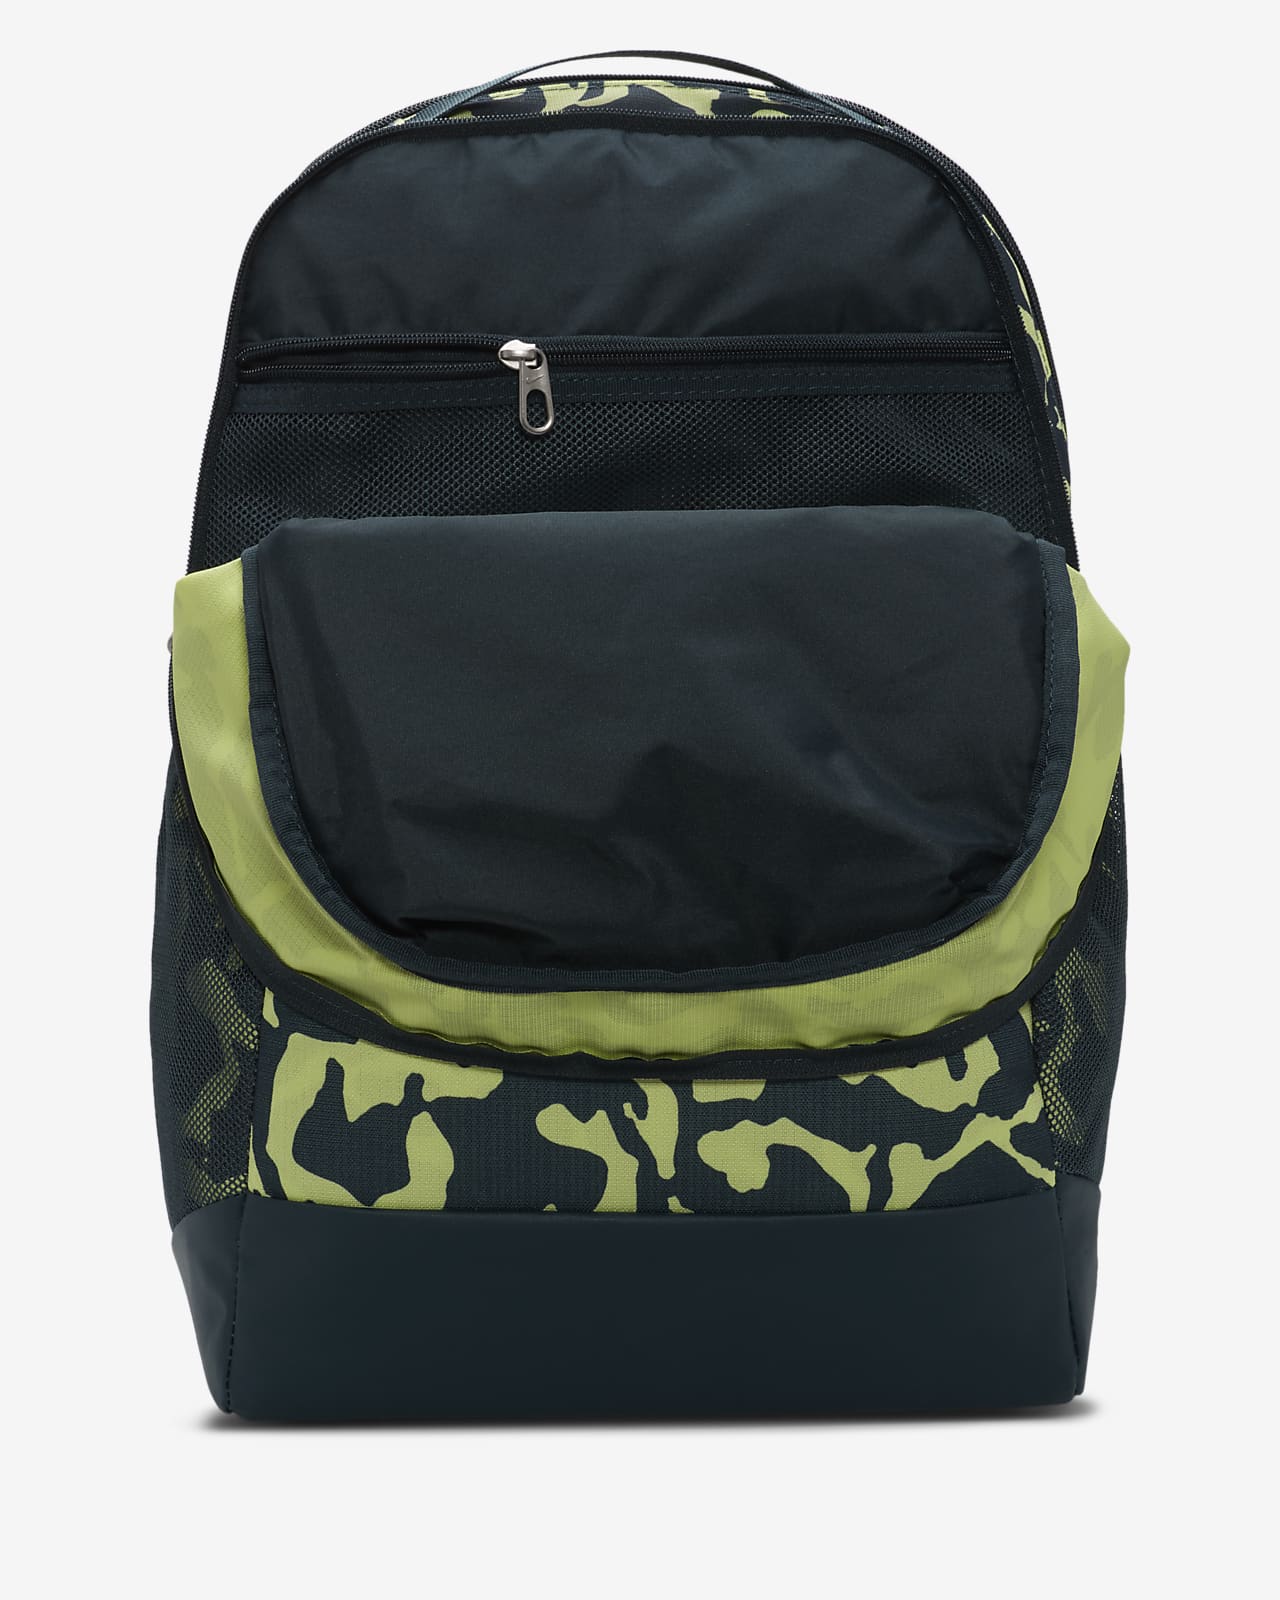 Nike Brasilia Medium Cargo Khaki (Olive) Backpack ( BA6124-325 ) NWT